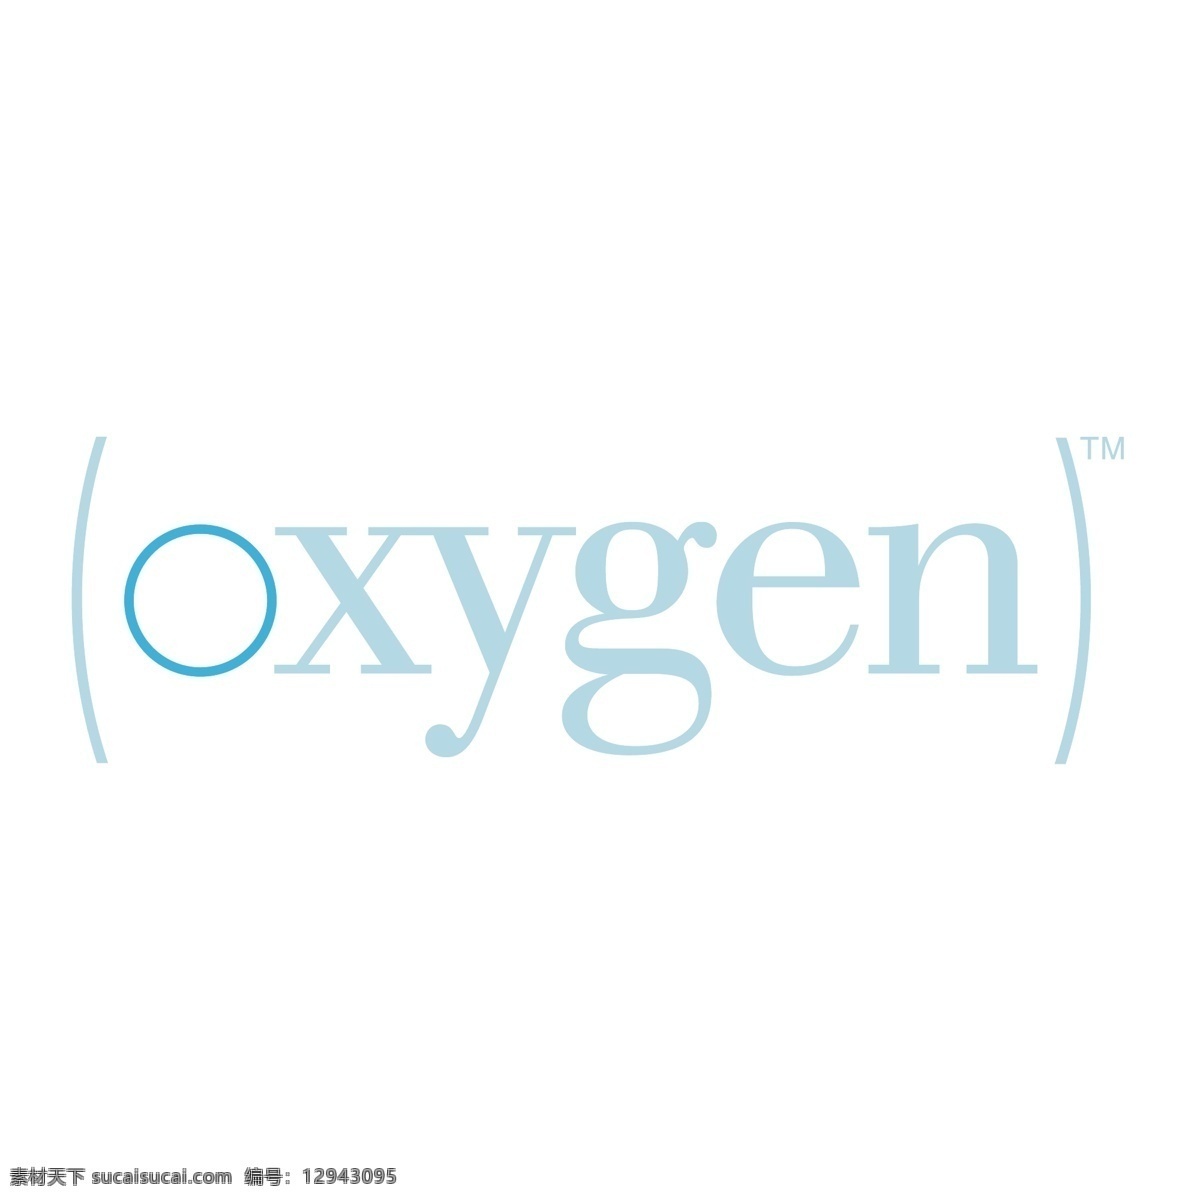 1氧气 氧 氧气 氧分子 自由向量 向量氧标志 载体 氧的标志 氧载体 logo 矢量 使用氧 储氧